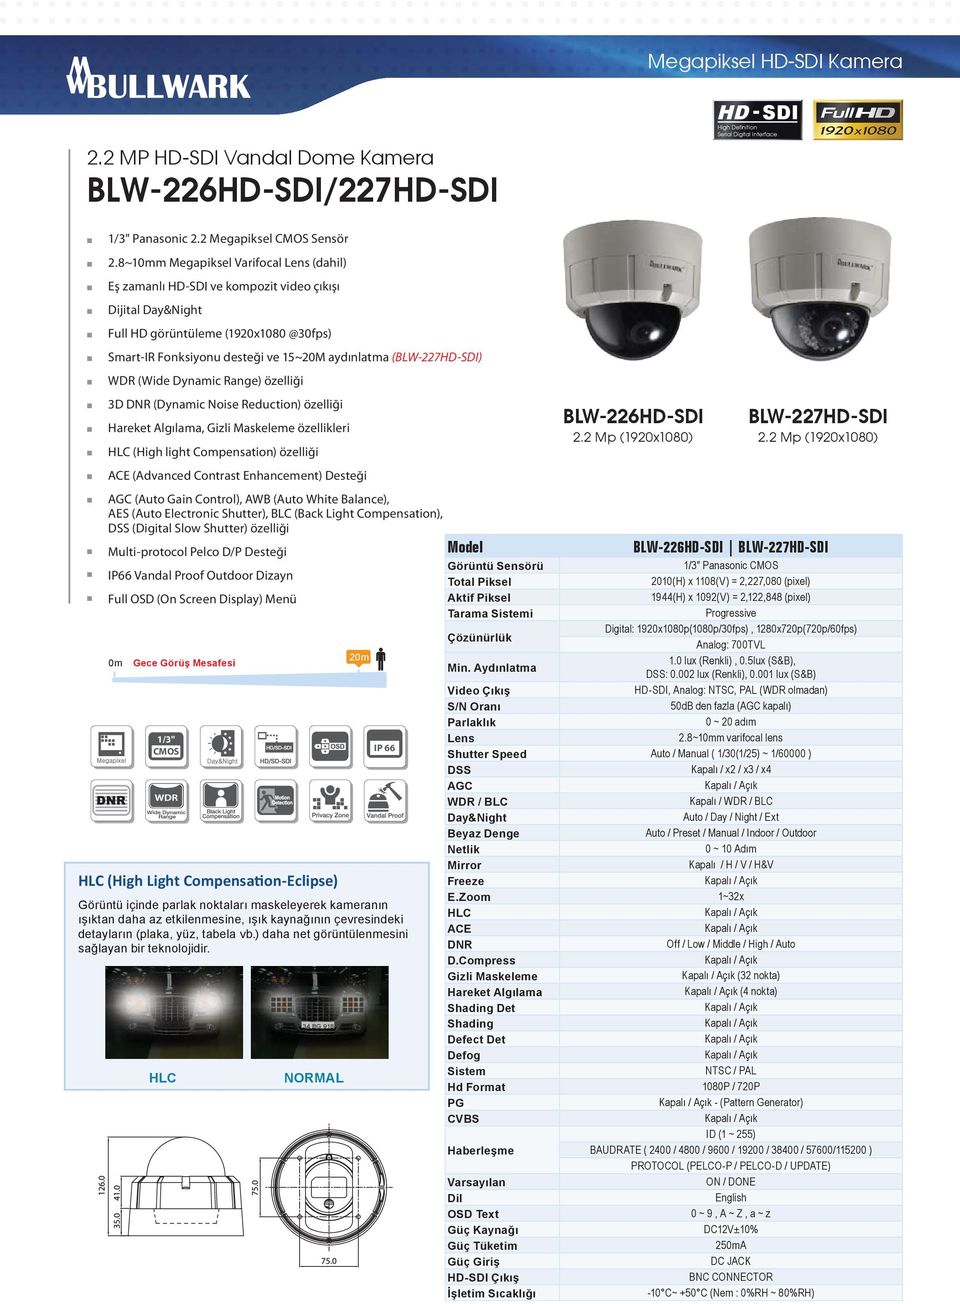 (BLW-227HD-SDI) WDR (Wide Dynamic Range) özelliği 3D DNR (Dynamic Noise Reduction) özelliği BLW-226HD-SDI Hareket Algılama, Gizli Maskeleme özellikleri 2.2 Mp (1920x1080) 2.